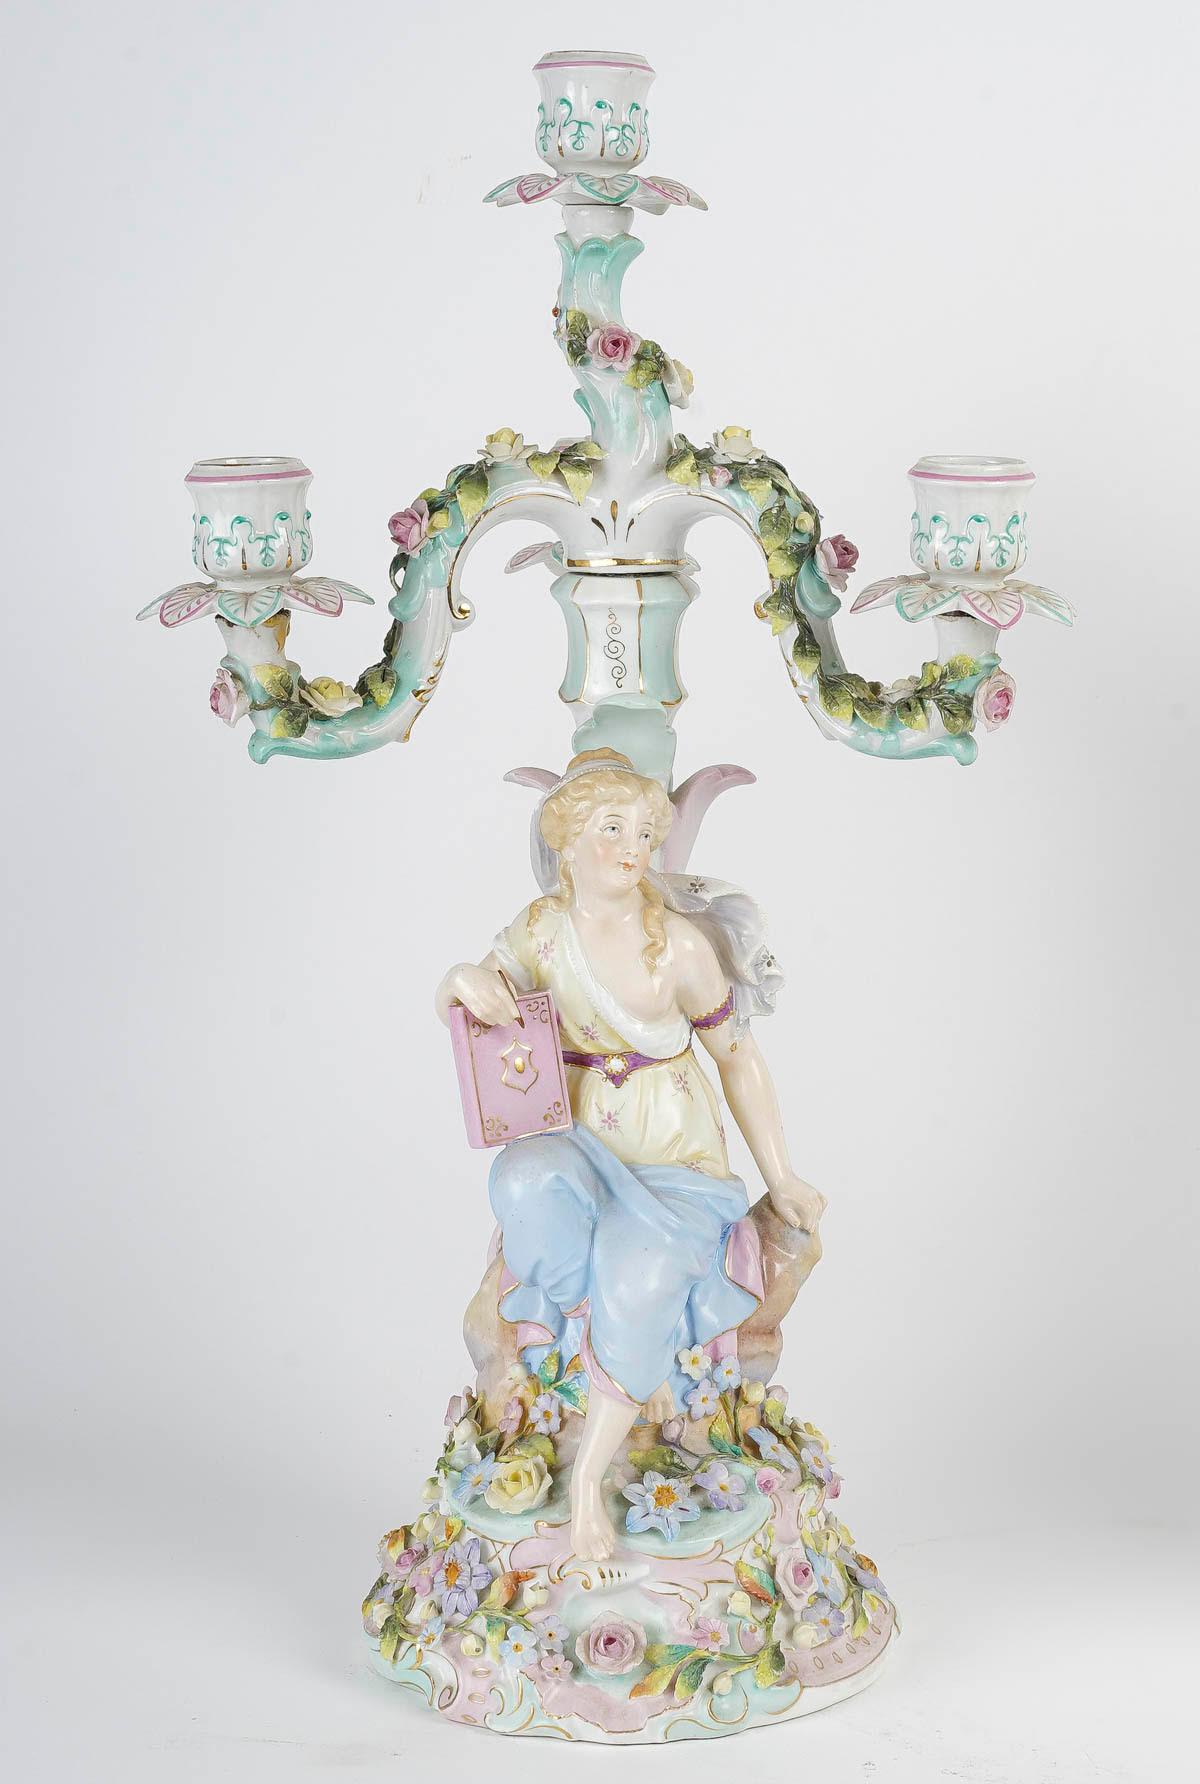 Paire de candélabres en porcelaine dans le goût de Meissen, 19e siècle.

Paire de candélabres en porcelaine, XIXe siècle, période Napoléon III, très belle qualité.
h:48cm, d : 29cm